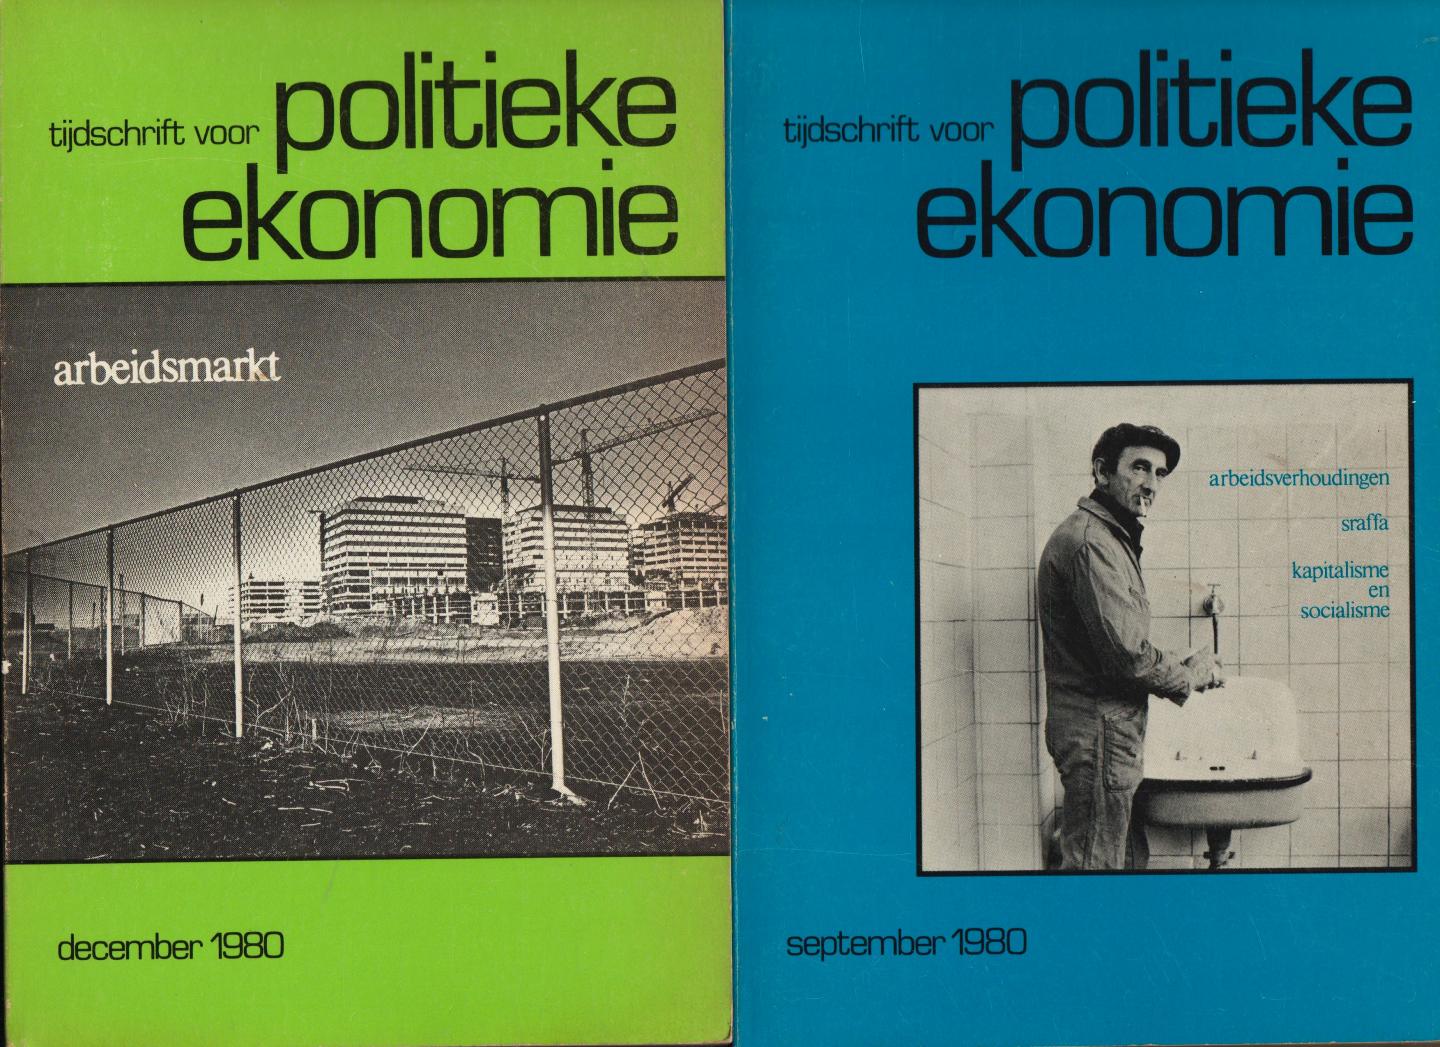 TIJDSCHRIFT VOOR POLITIEKE ECONOMIE - TIJDSCHRIFT VOOR POLITIEKE ECONOMIE, 4e jrg. 1980/81, nrs. 1 tem 4